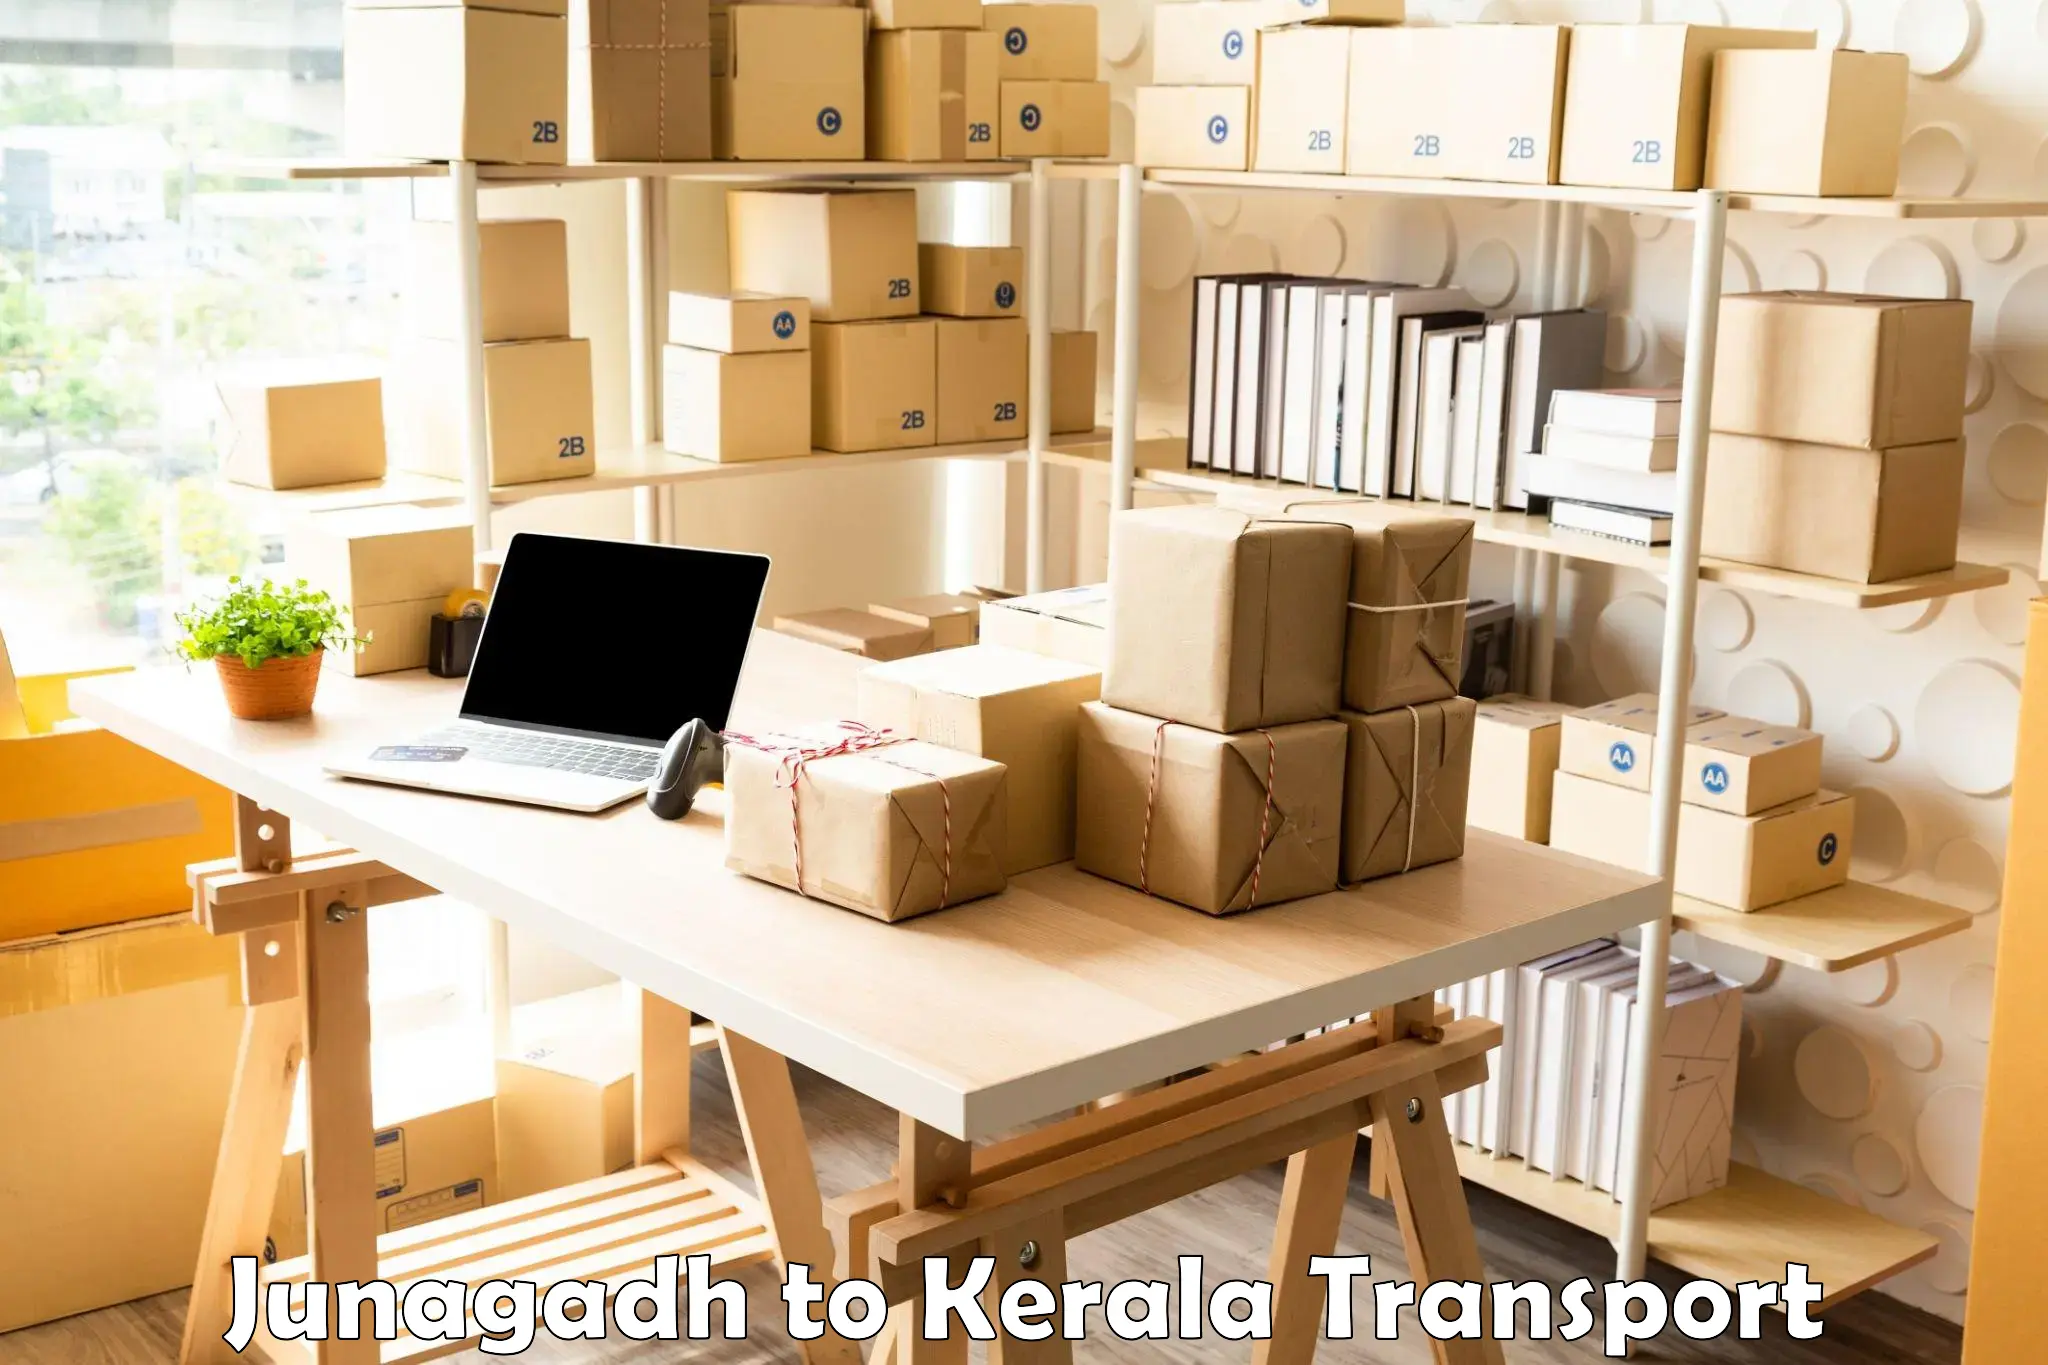 Shipping services Junagadh to Cochin